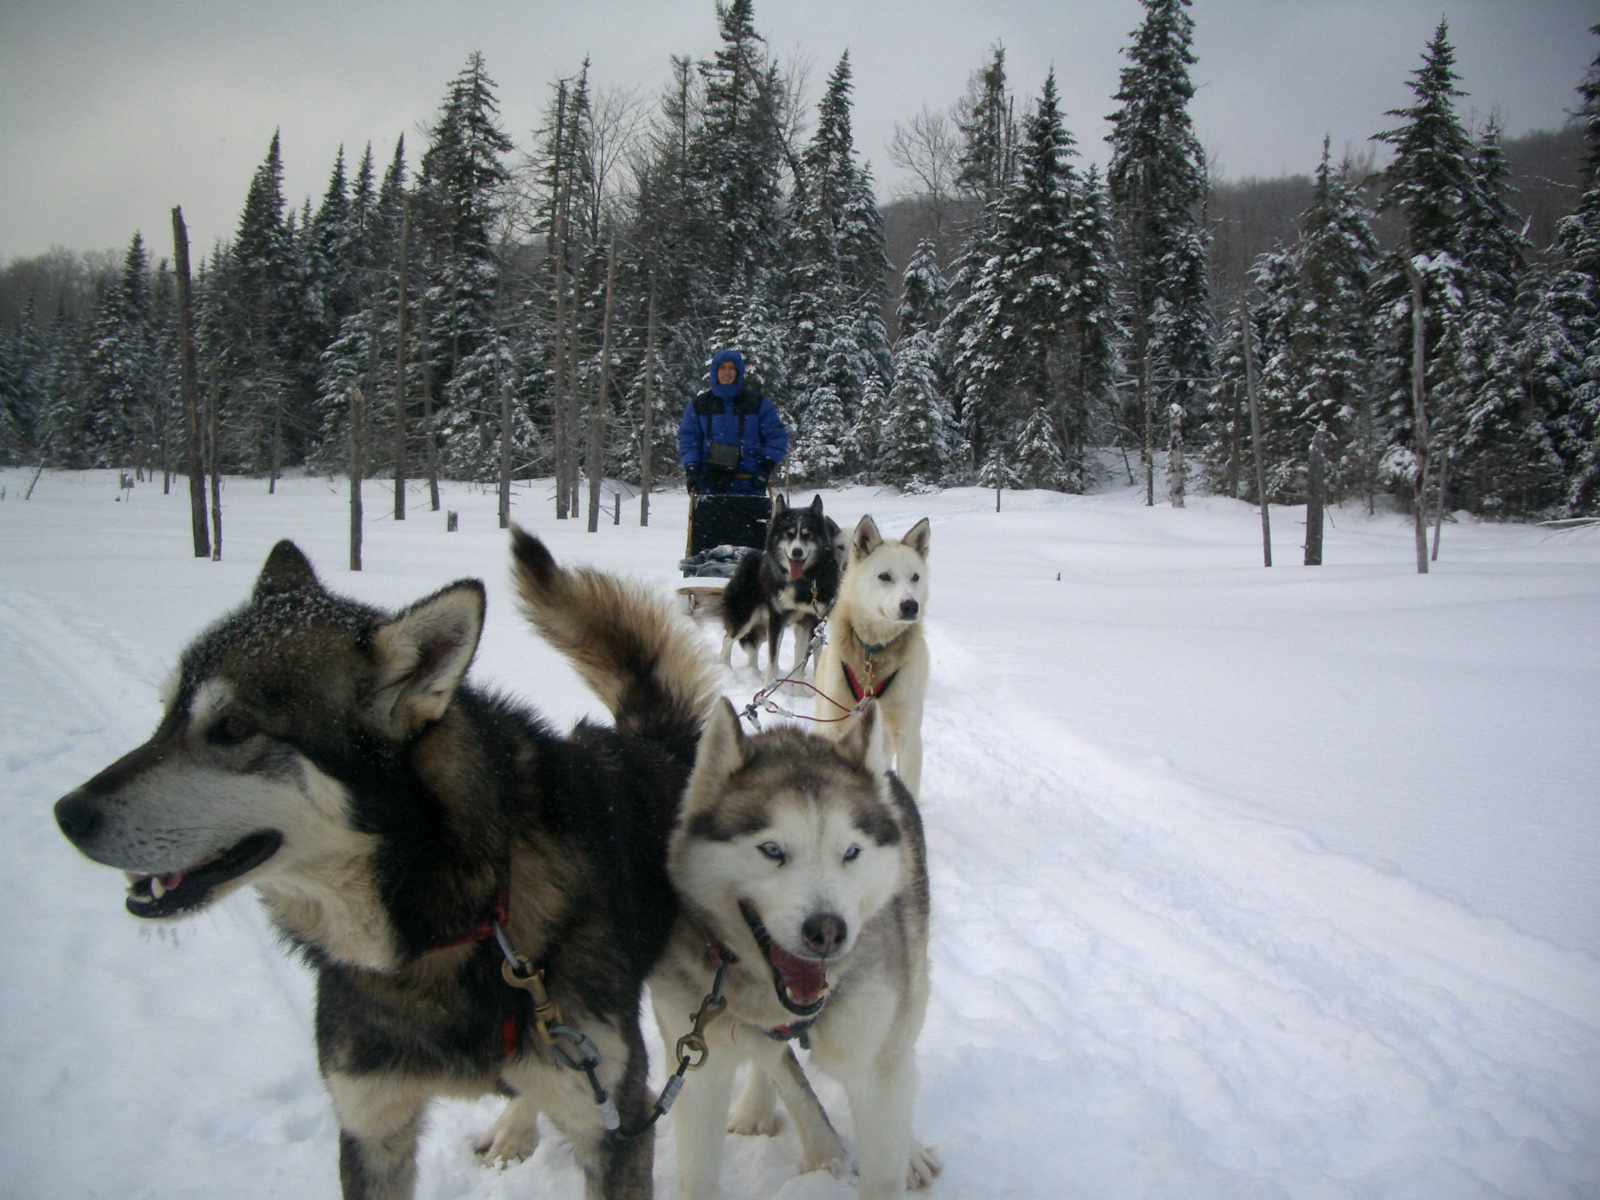 manada de perros inuit canadienses en trineo en la nieve tirando de un hombre con equipo de nieve